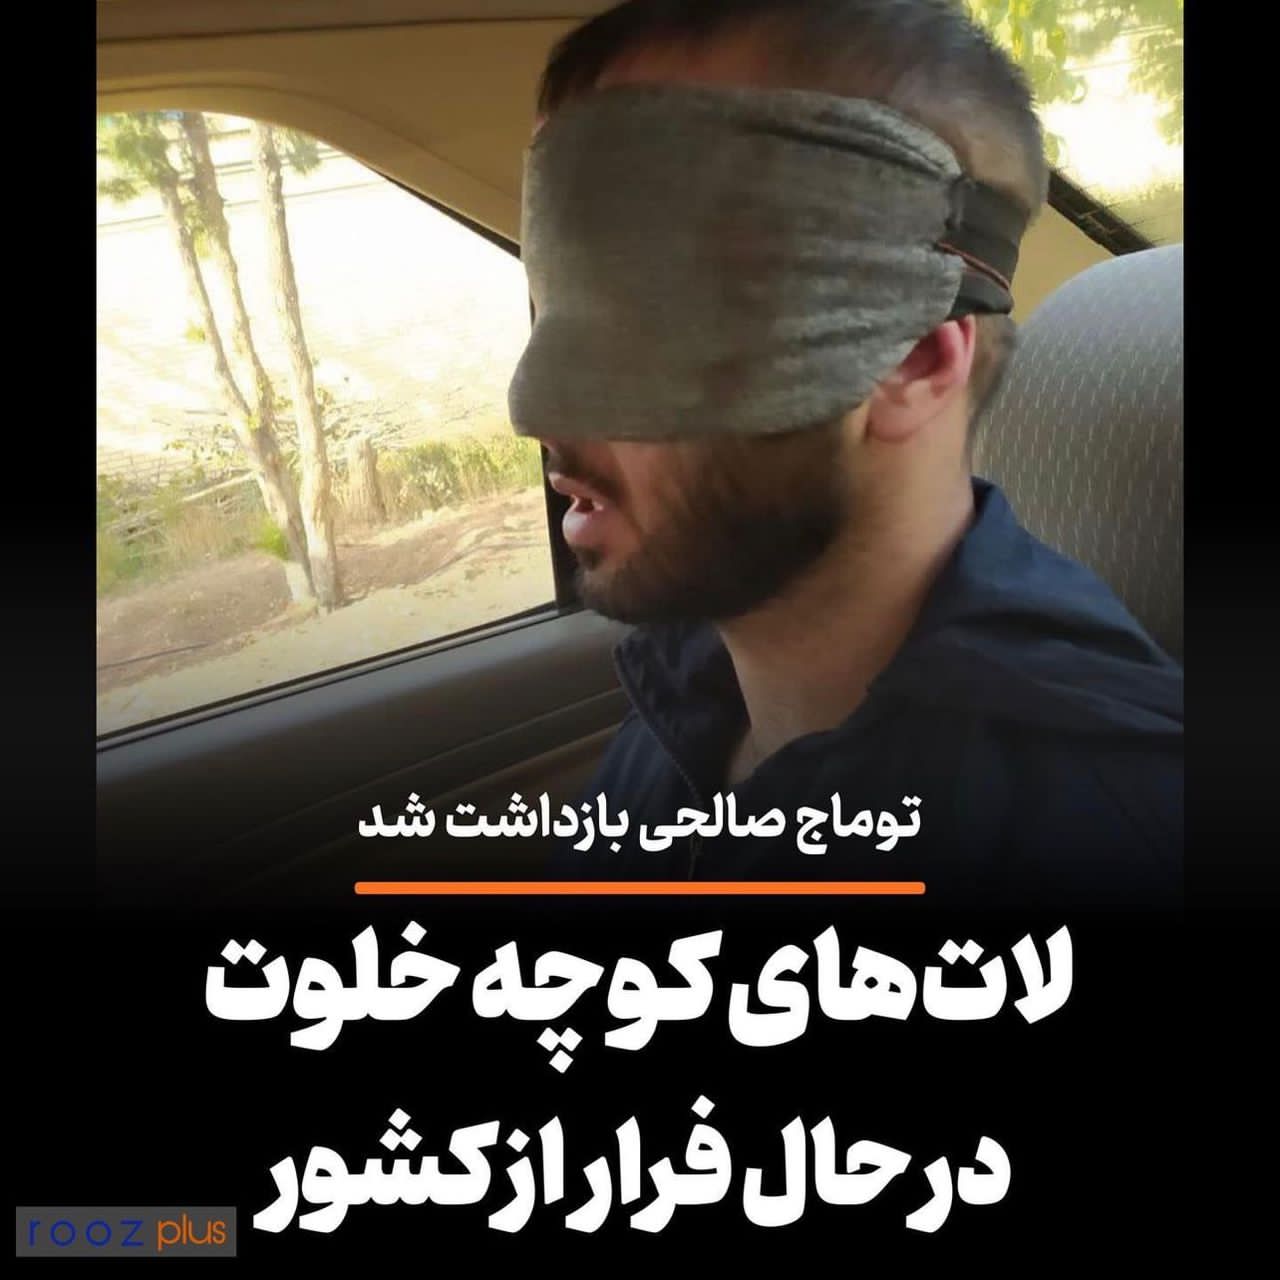 فرار به جای قرار/ توماج صالحی لیدر مجازی اغتشاشات در مرزهای غربی بازداشت شد